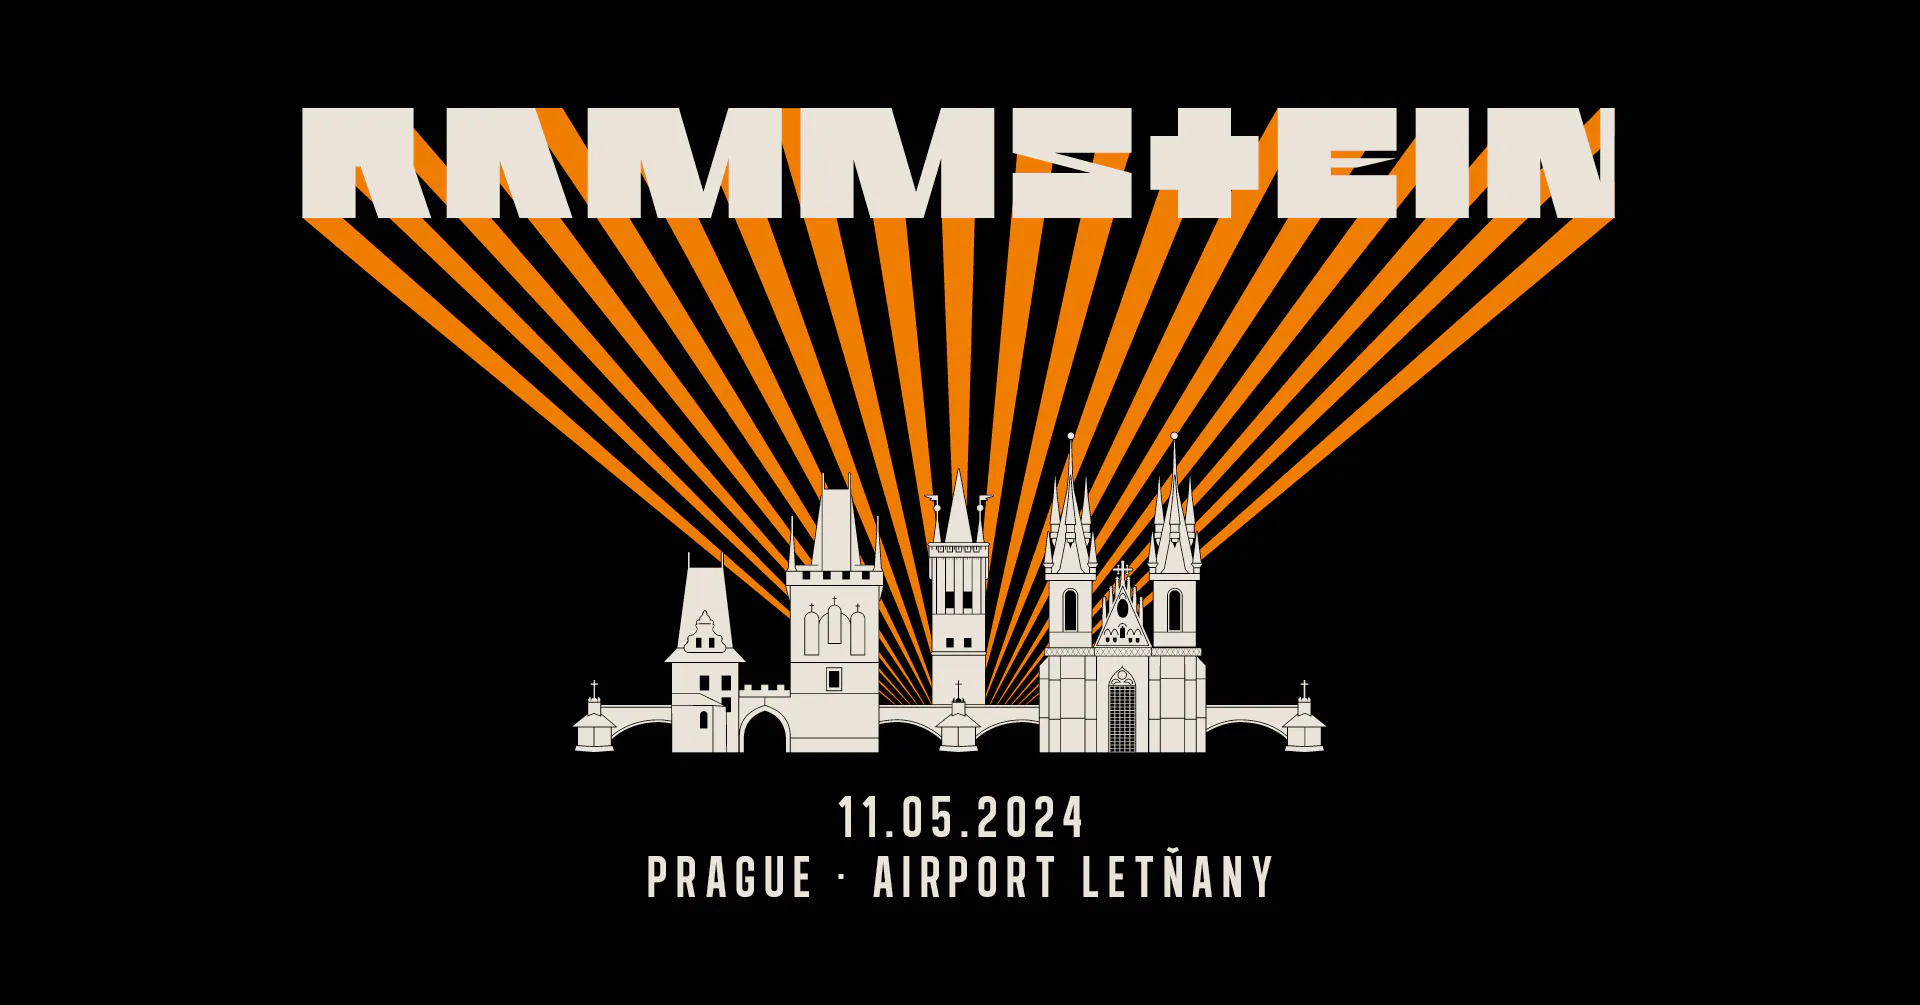 В 2024 году в Праге снова выступит группа Rammstein